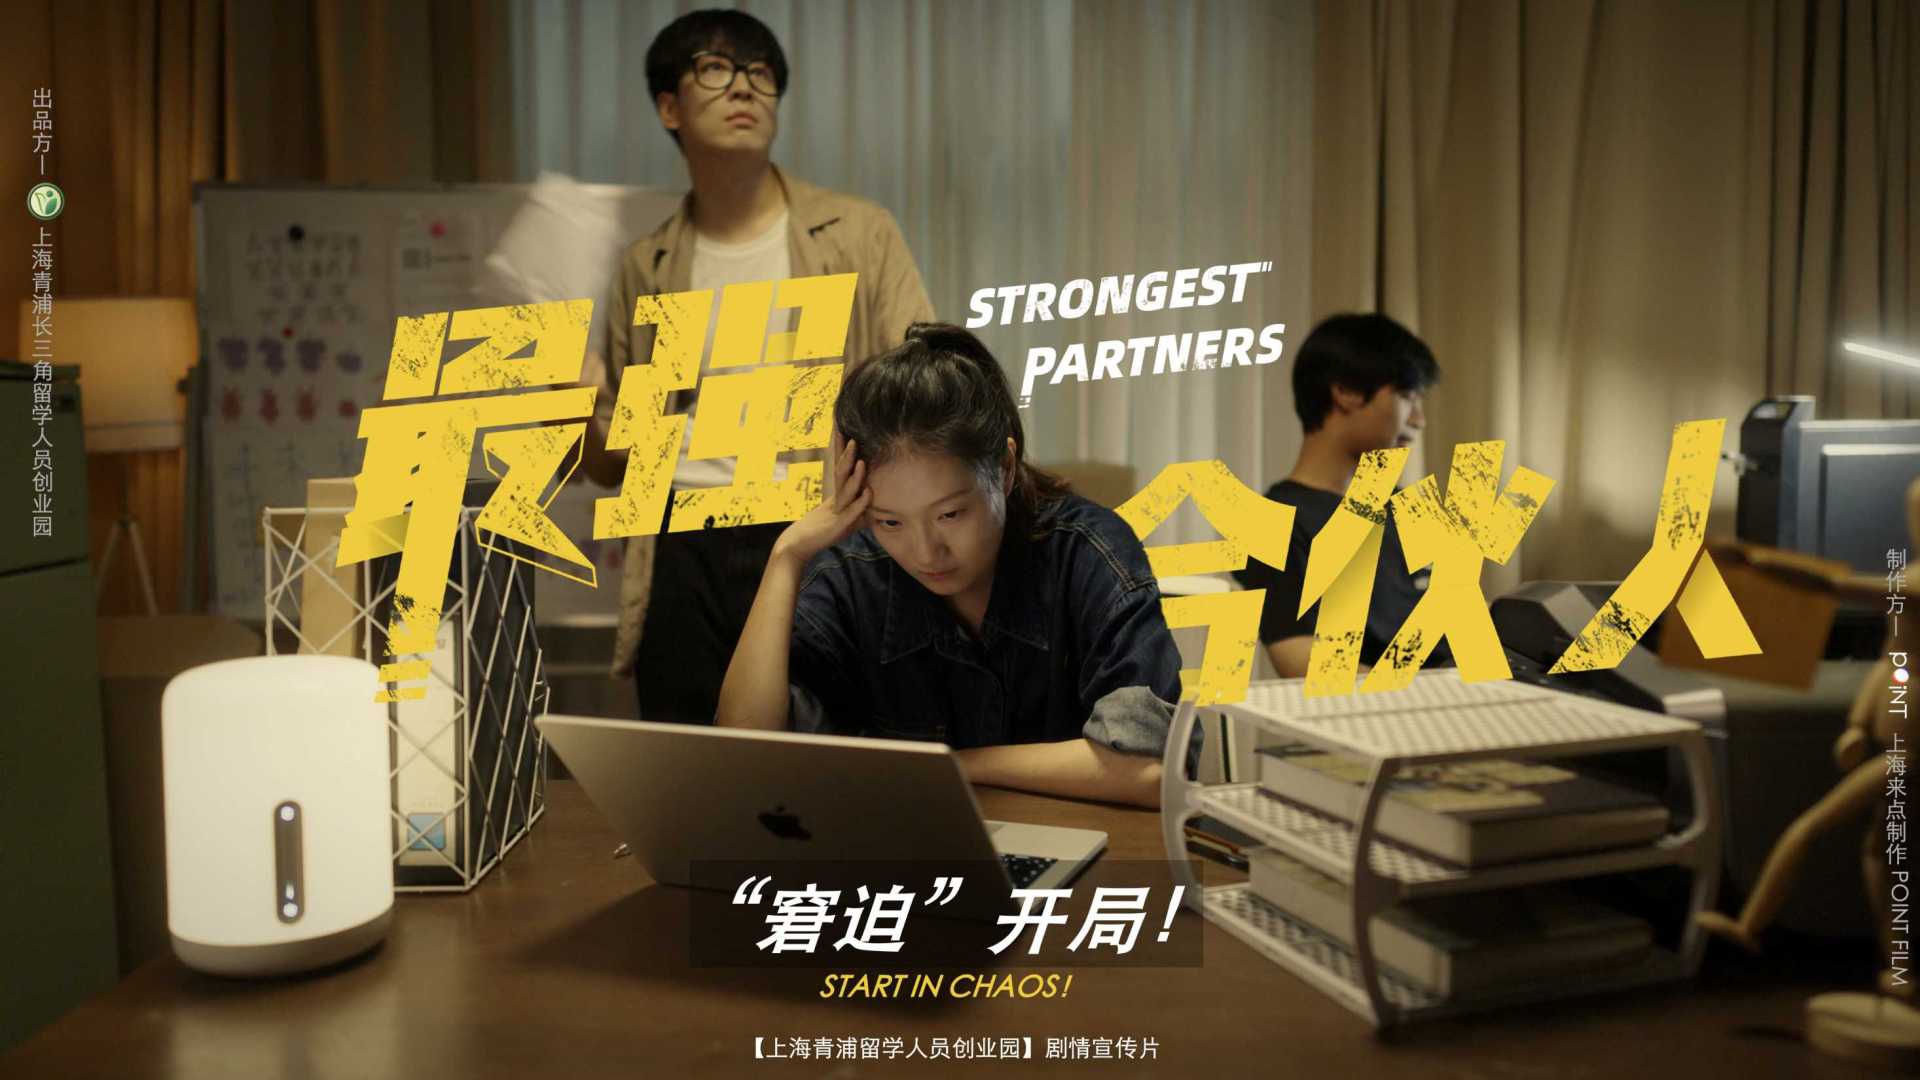 上海留学生创业园 政企宣传剧情片《最强合伙人》